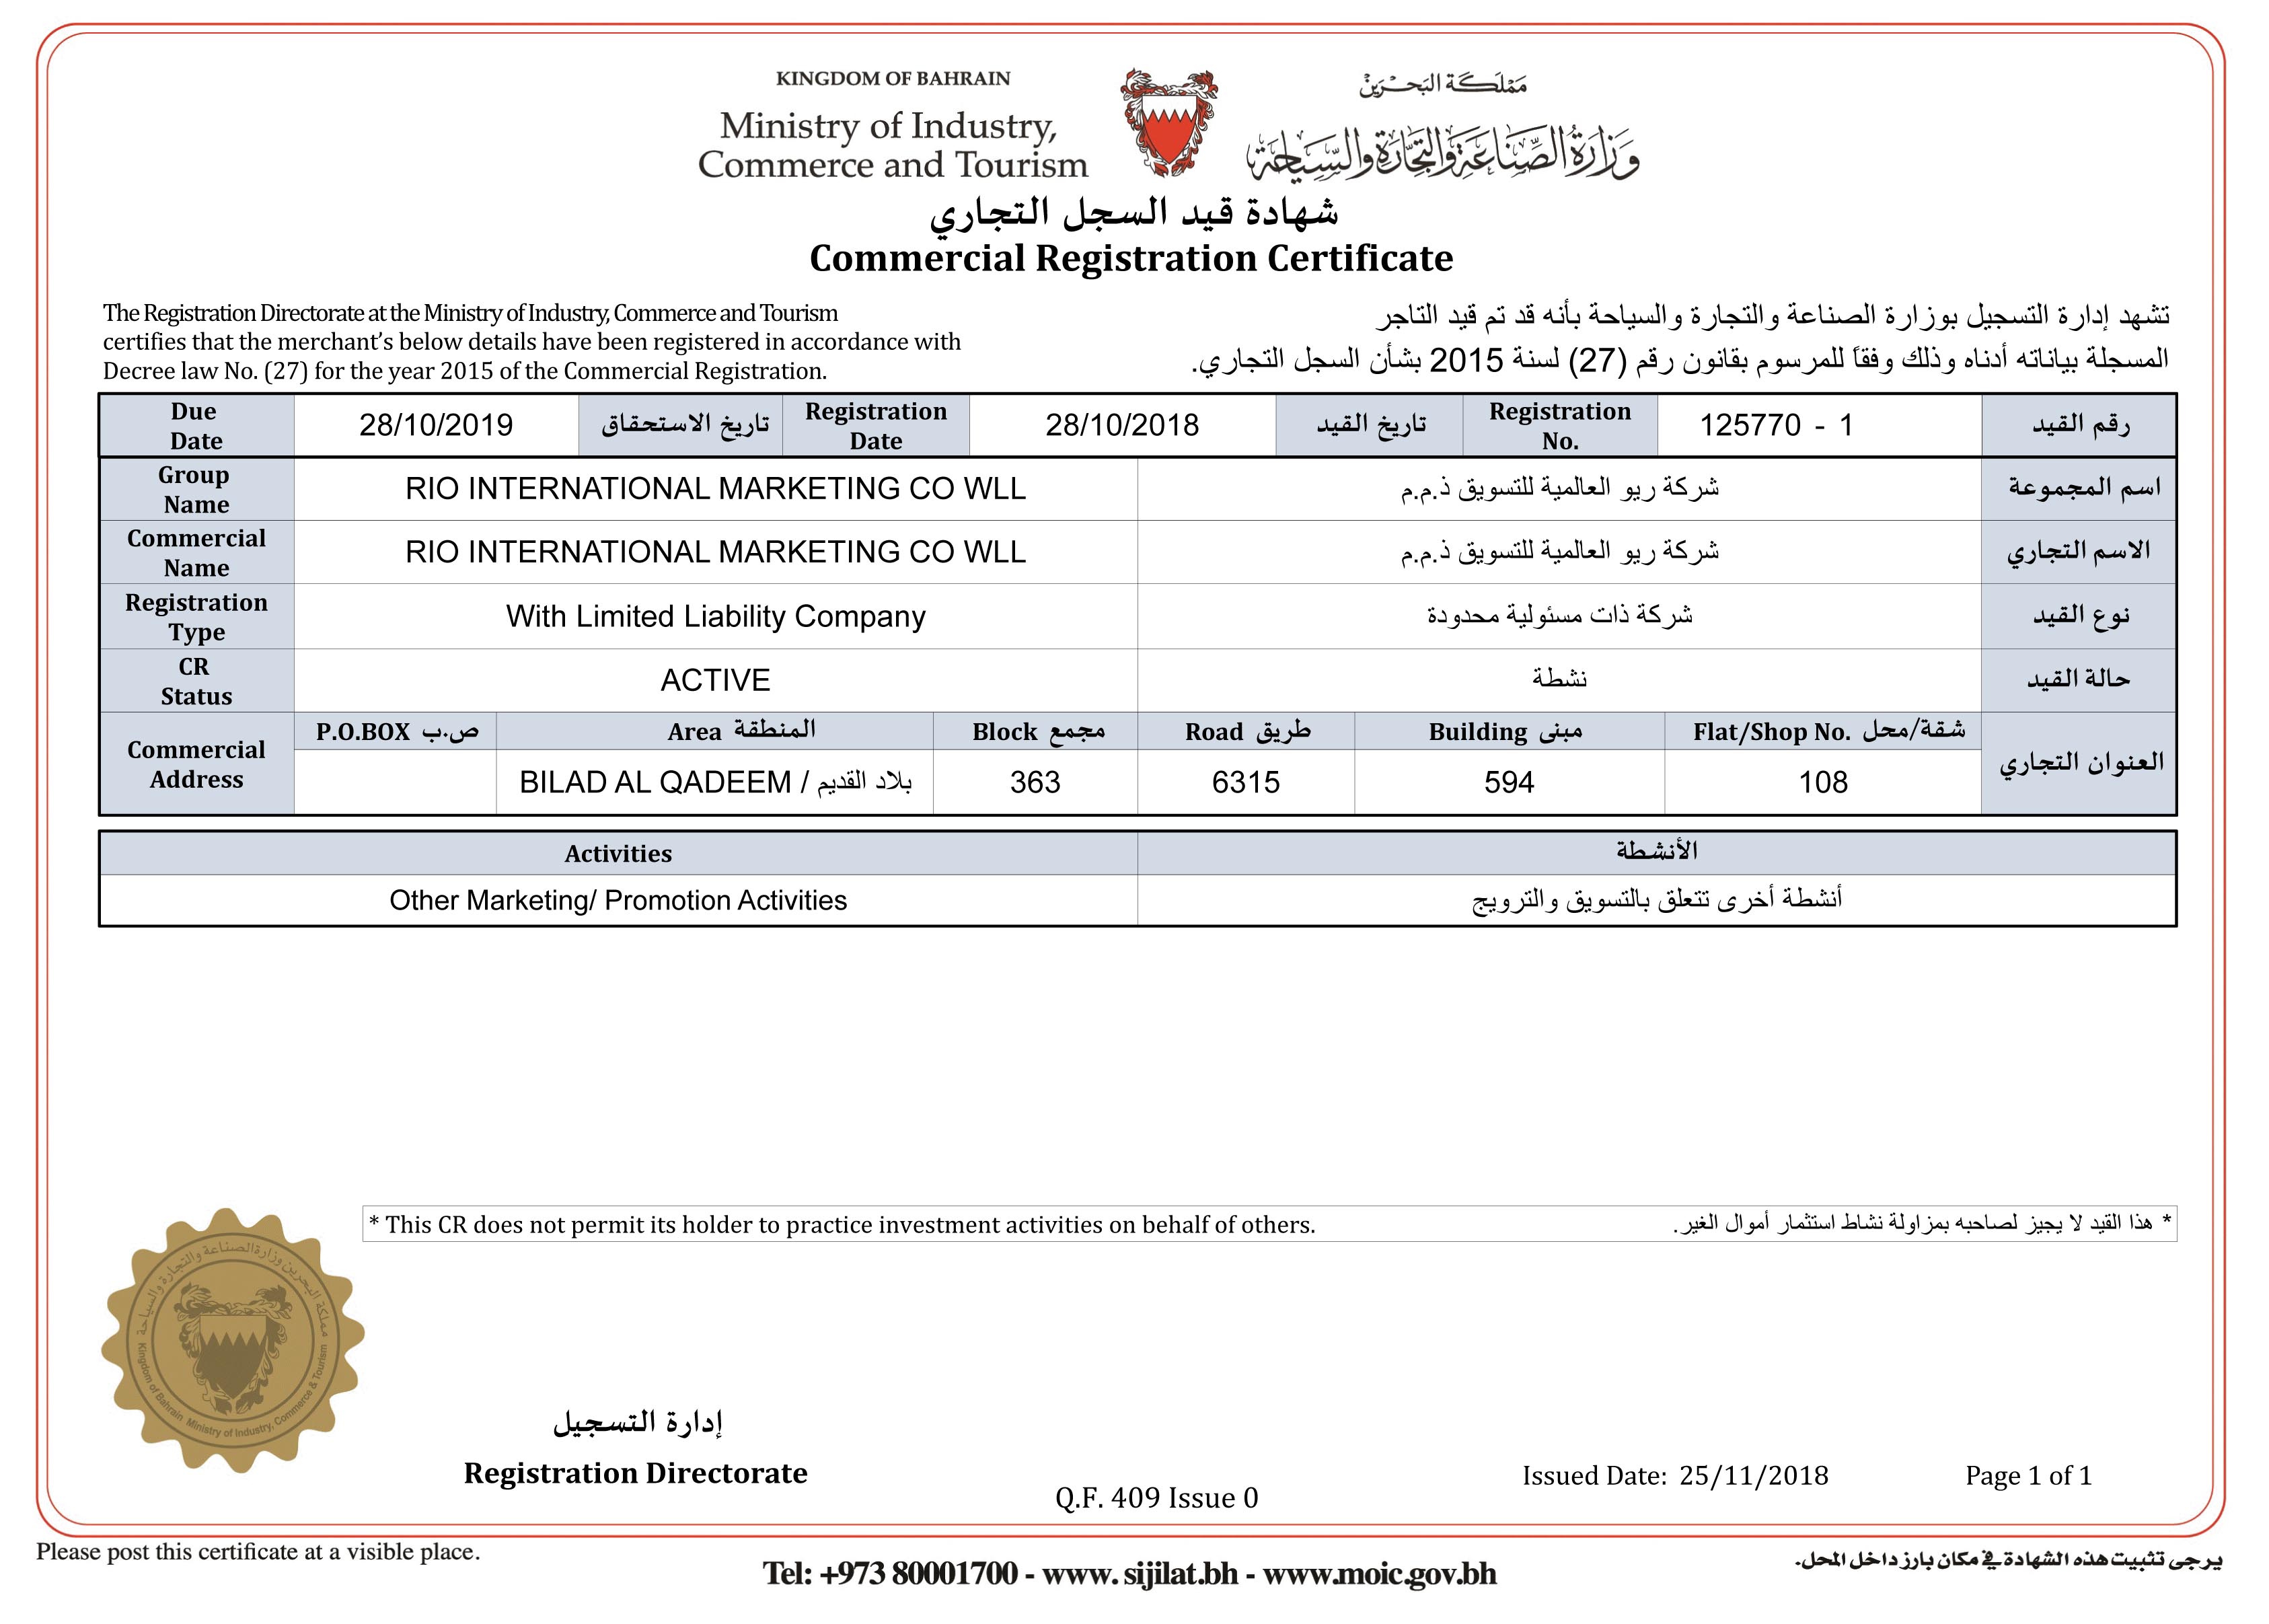 Gosi registration